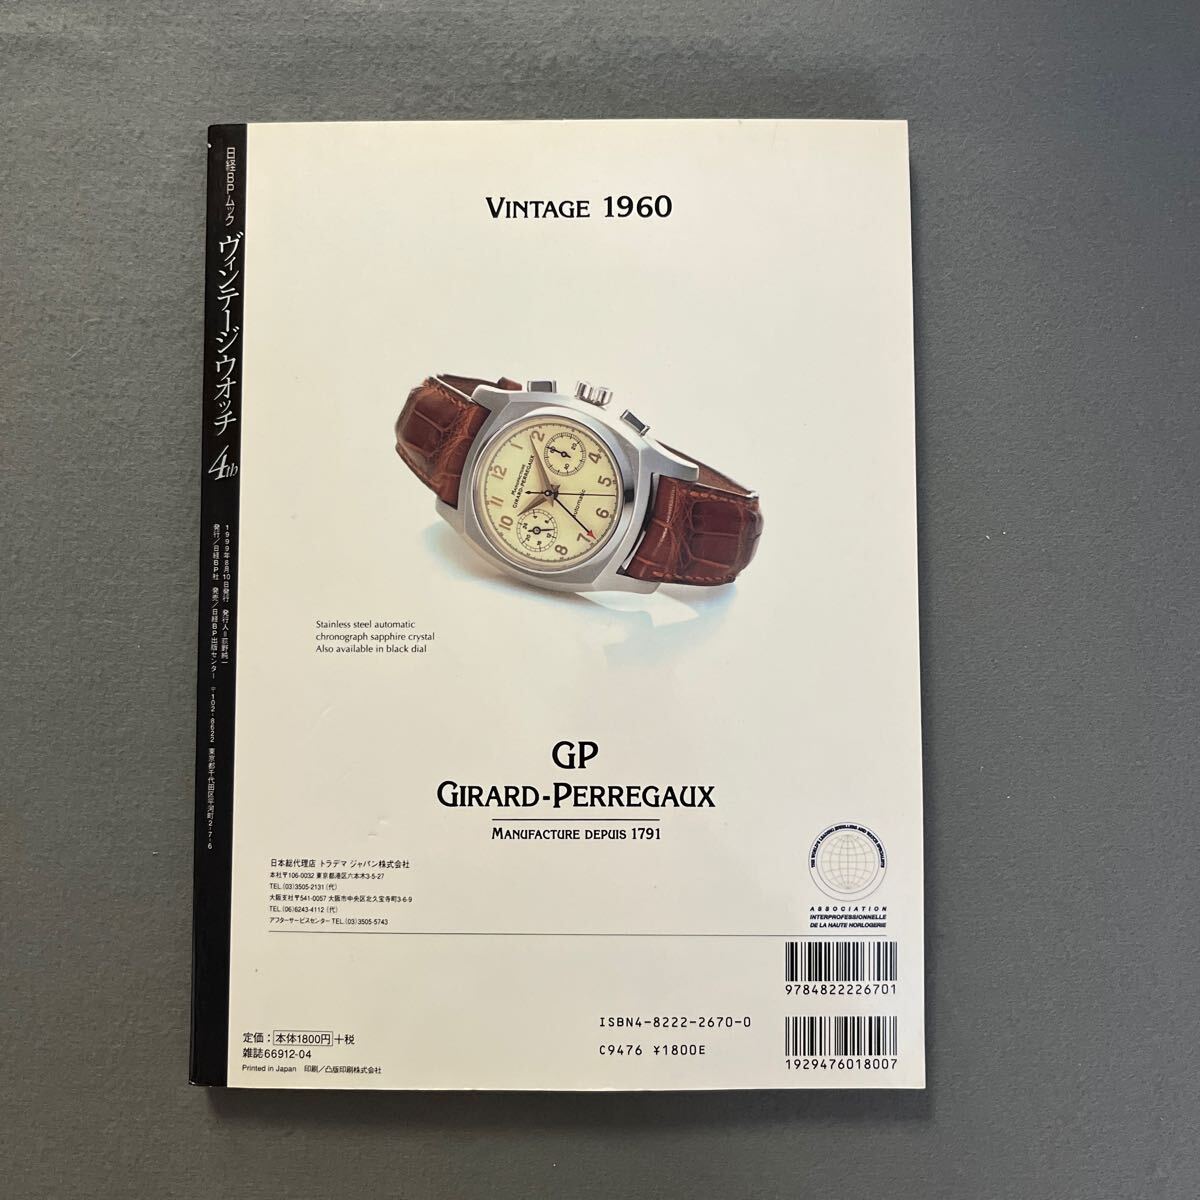  Vintage часы 4th*1999 год 8 месяц 10 день выпуск * Nikkei BP фирма * наручные часы * часы * Vintage * Piaget * Patek * Philip *o-tema*pige